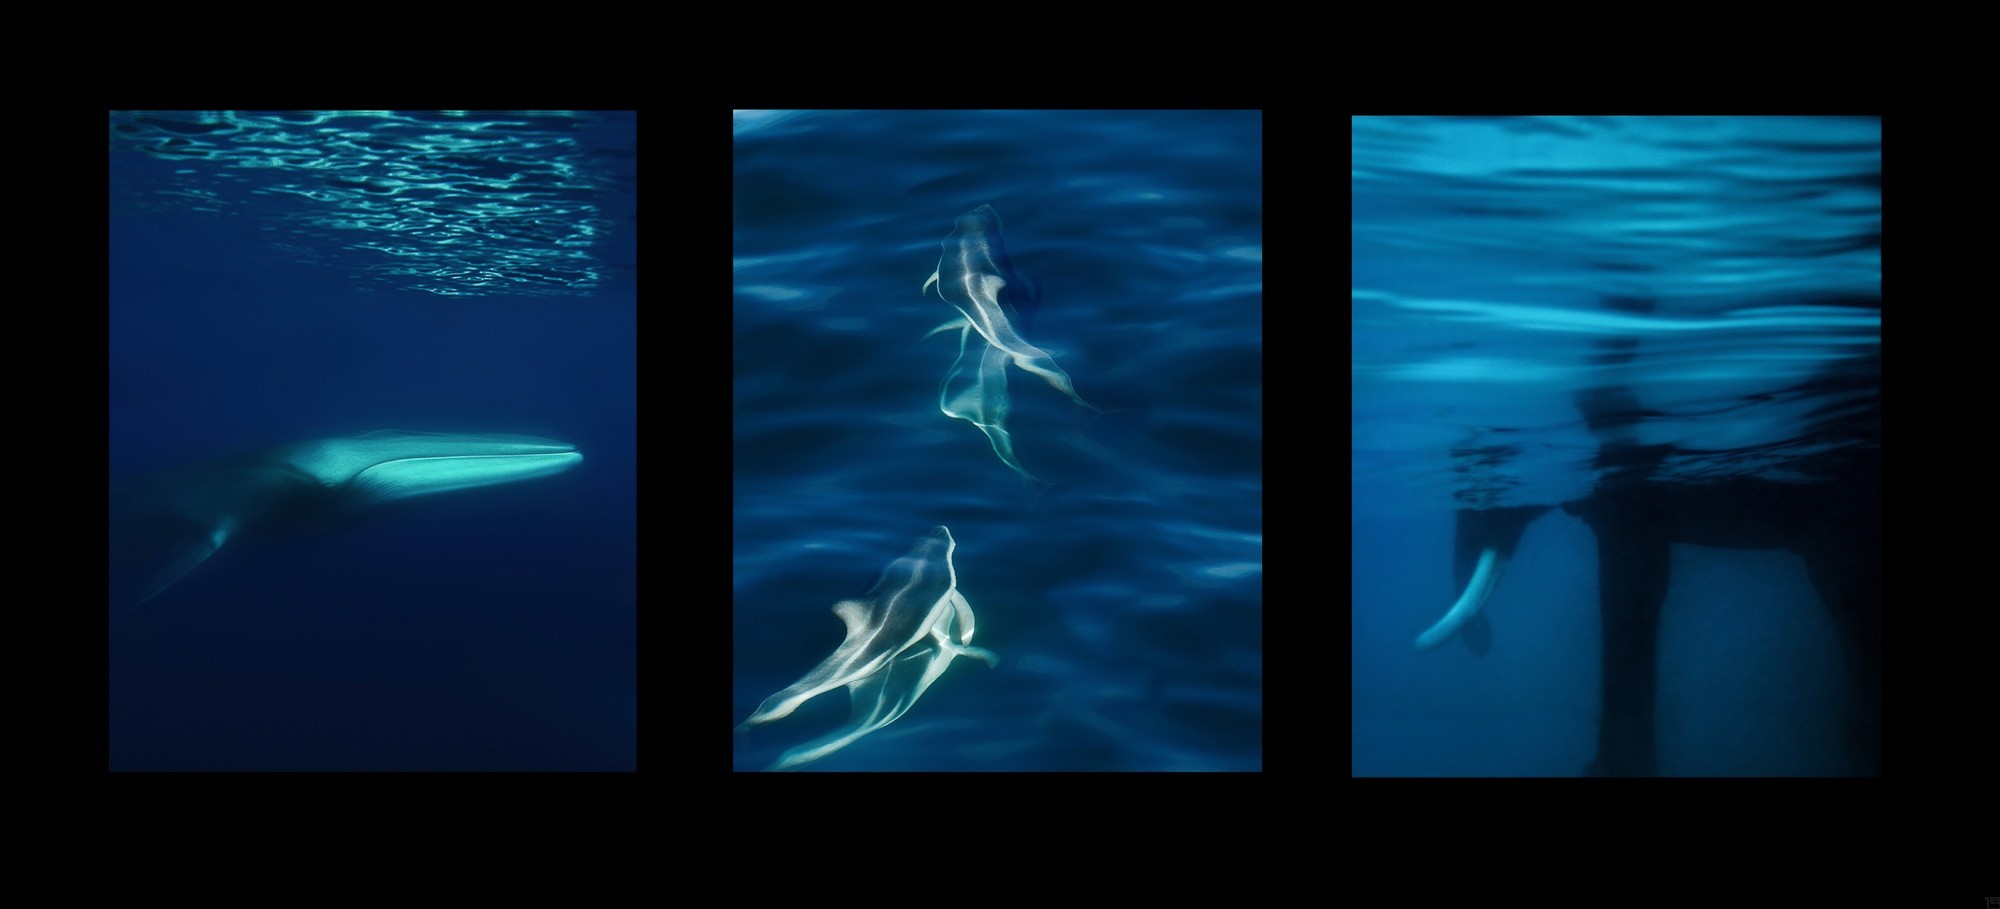 Oceans 1 - 3 | Fotografiecollage von Finkbeiner & Salm, Direktdruck auf Alu-Dibond, limitierte Edition 50+2 - 02